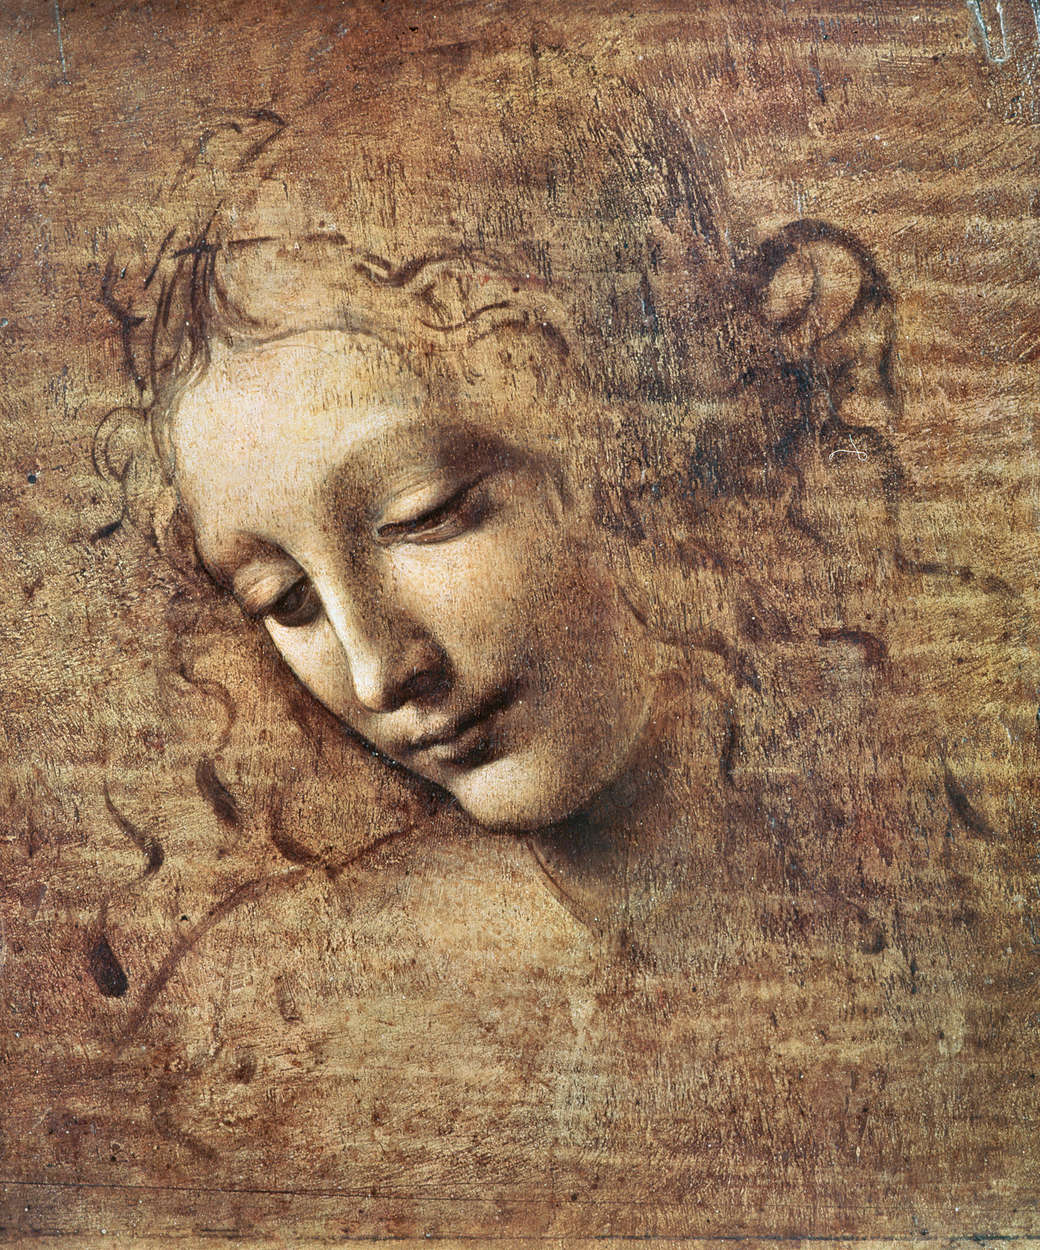             Muurschildering "Hoofd van een jonge vrouw met verward haar" van Leonardo da Vinci
        